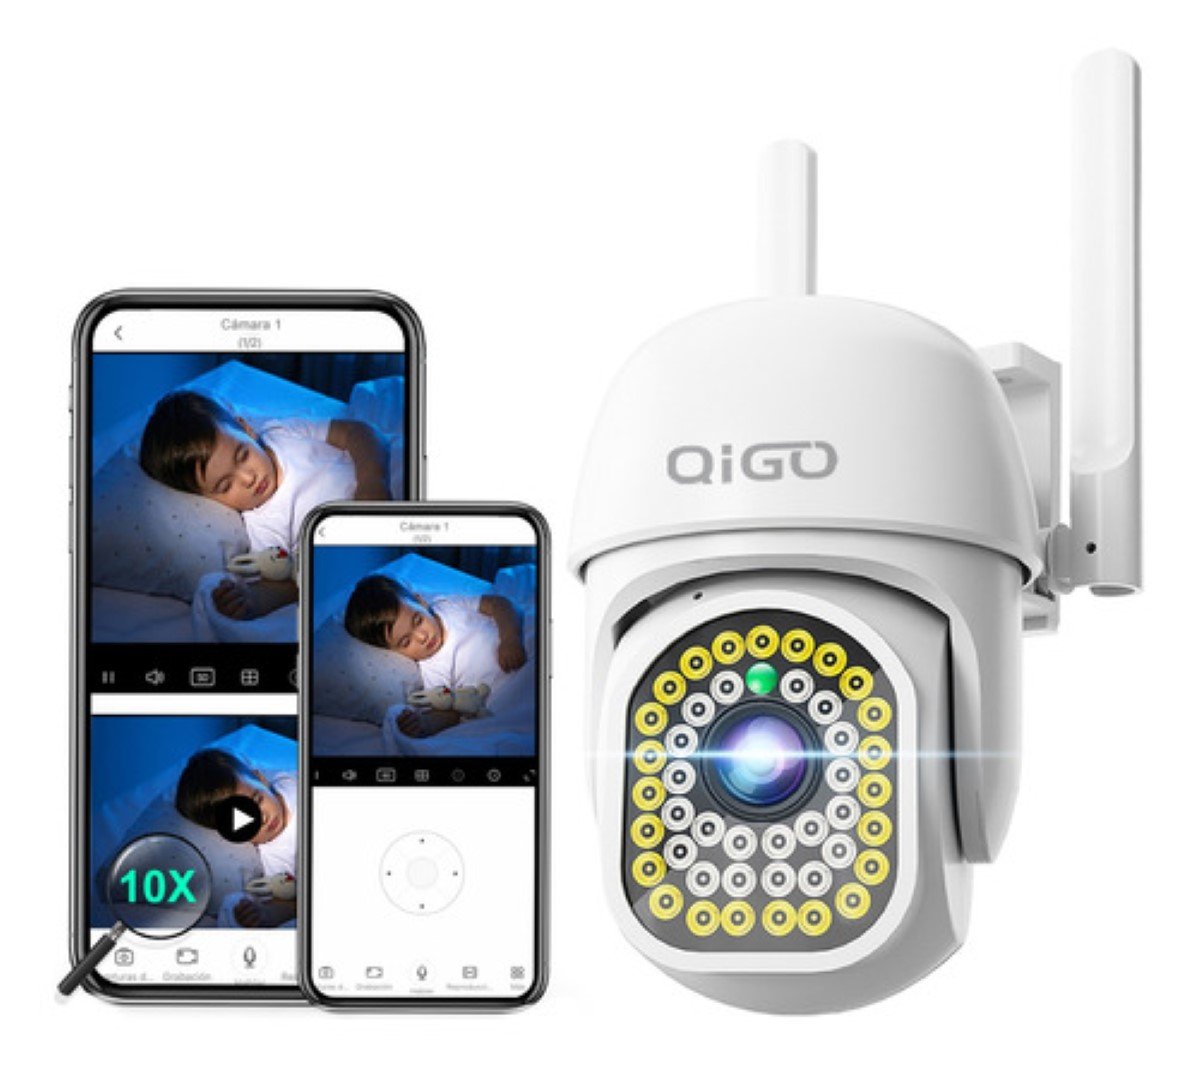 Camara Ip Wifi De Exterior Seguridad Vigilancia Full Hd 1080 Color Blanco